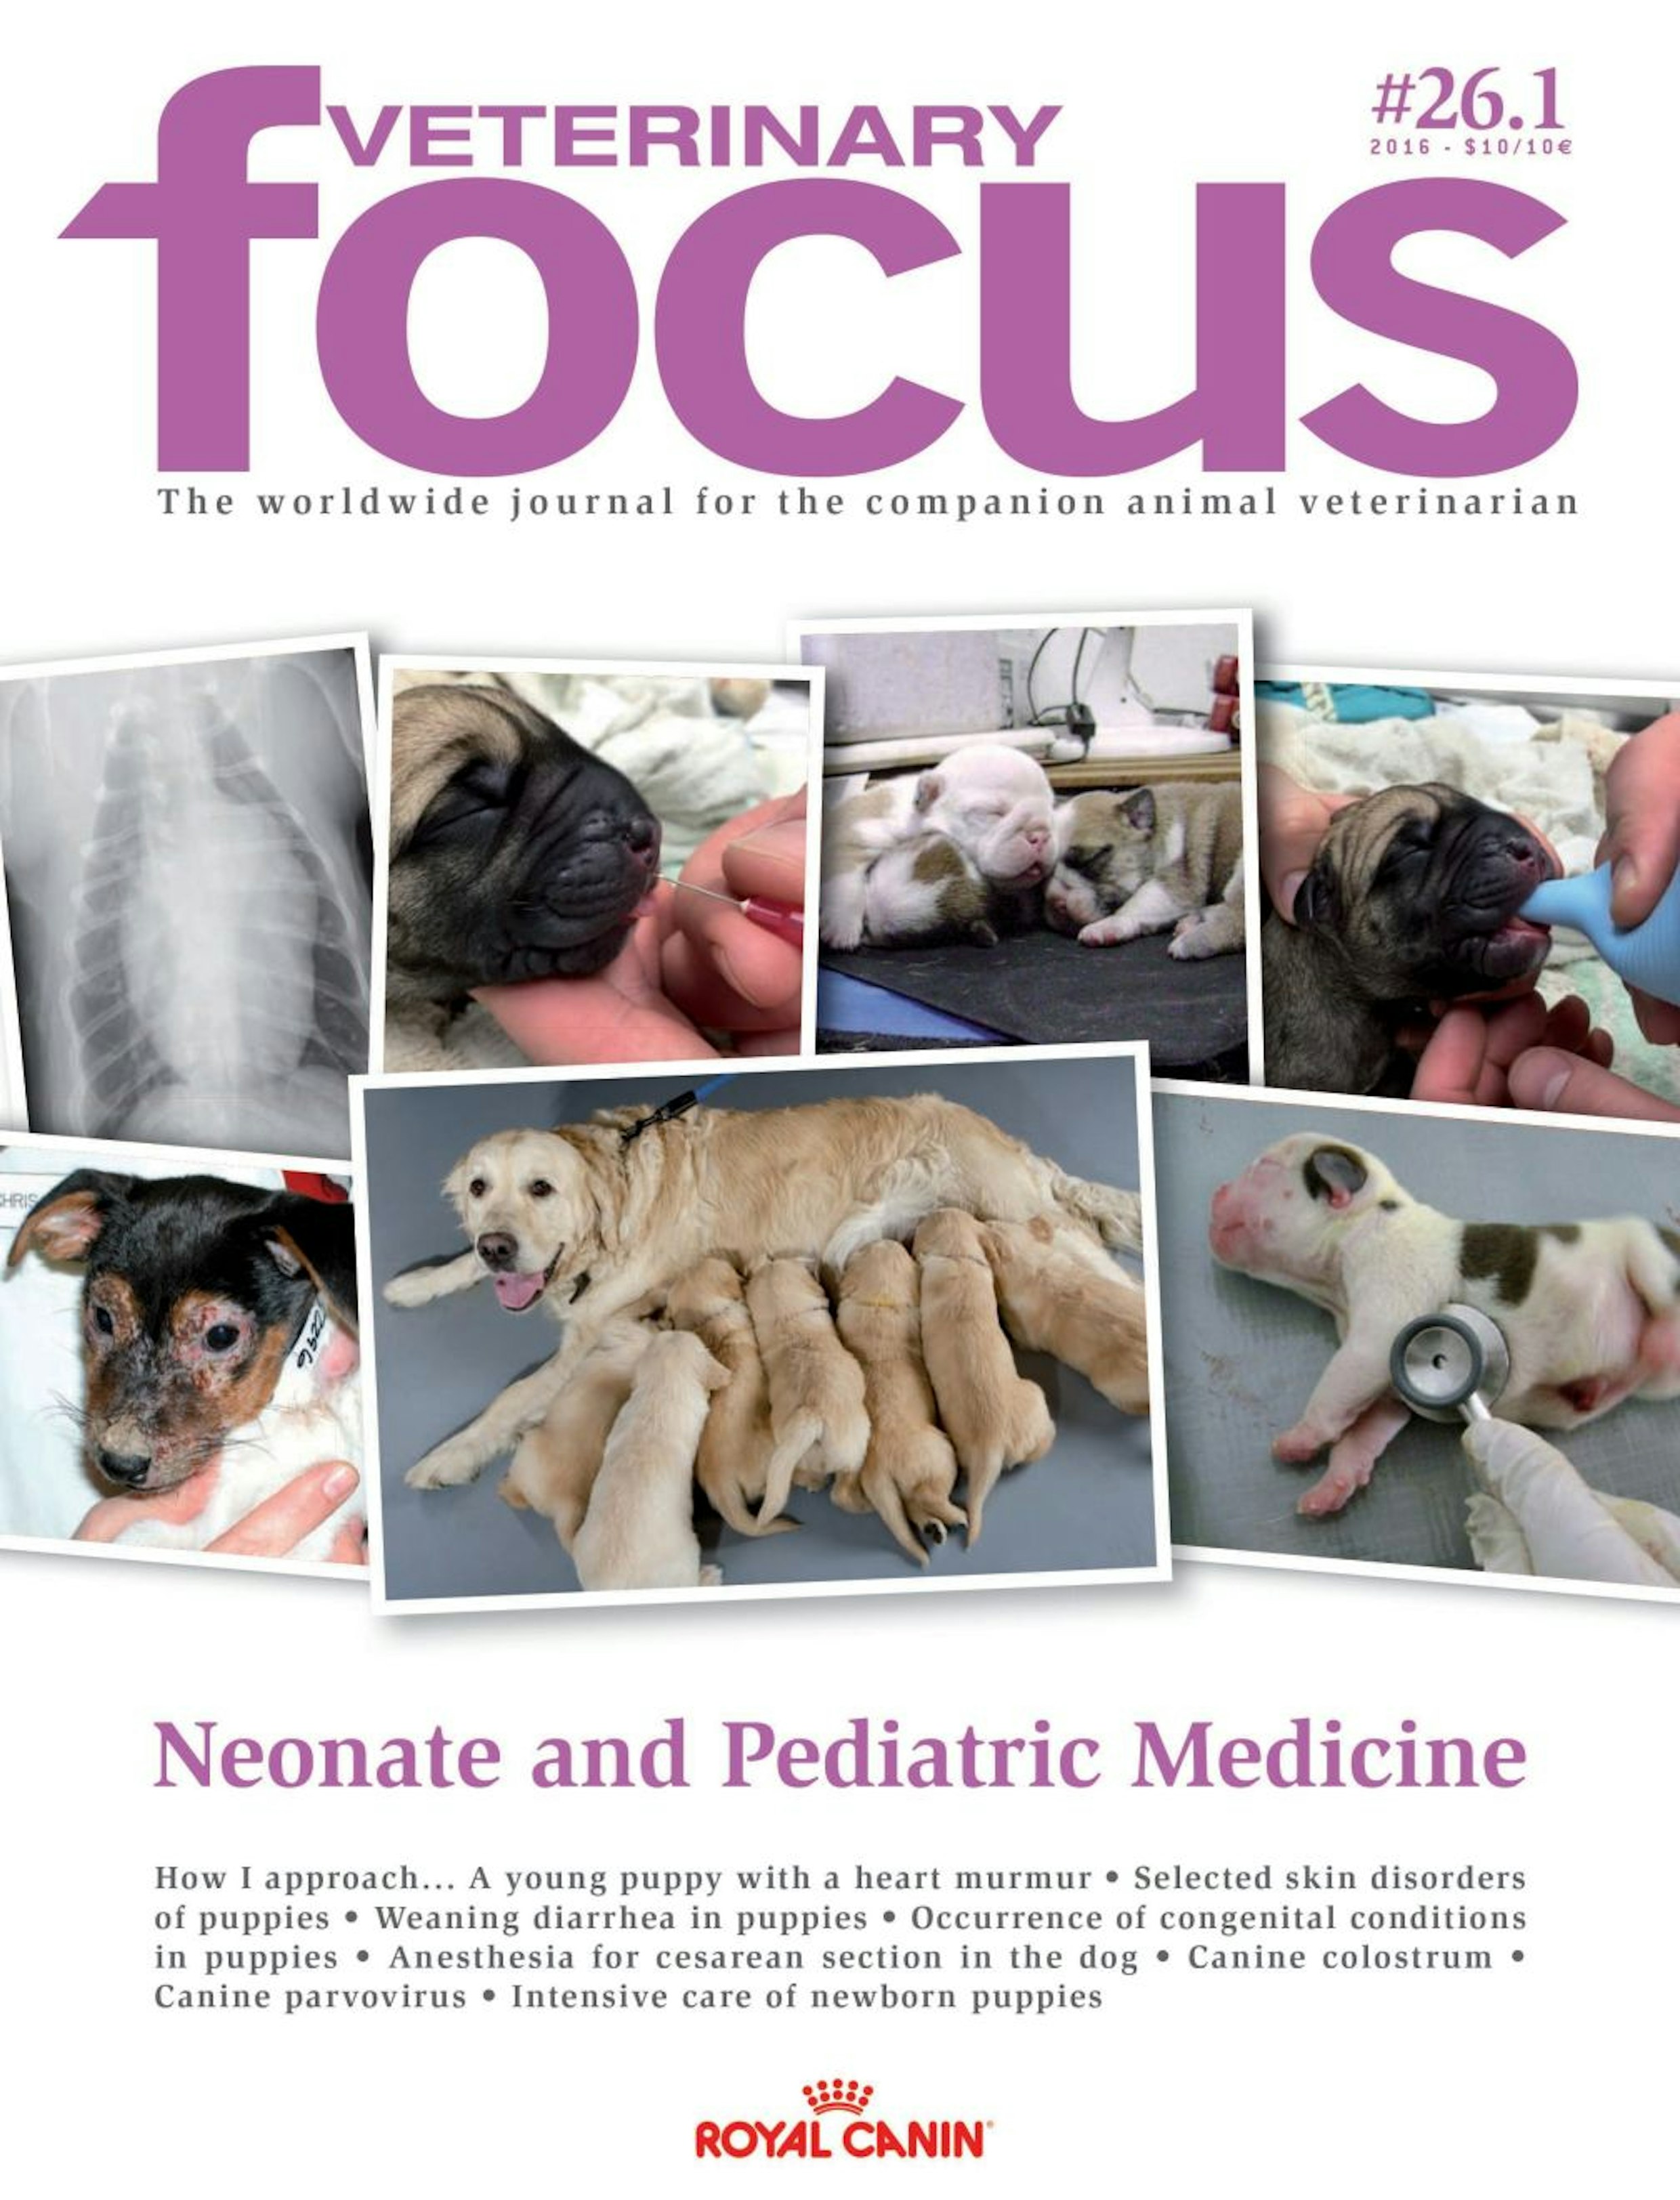 Neonate and Pediatric Medicine